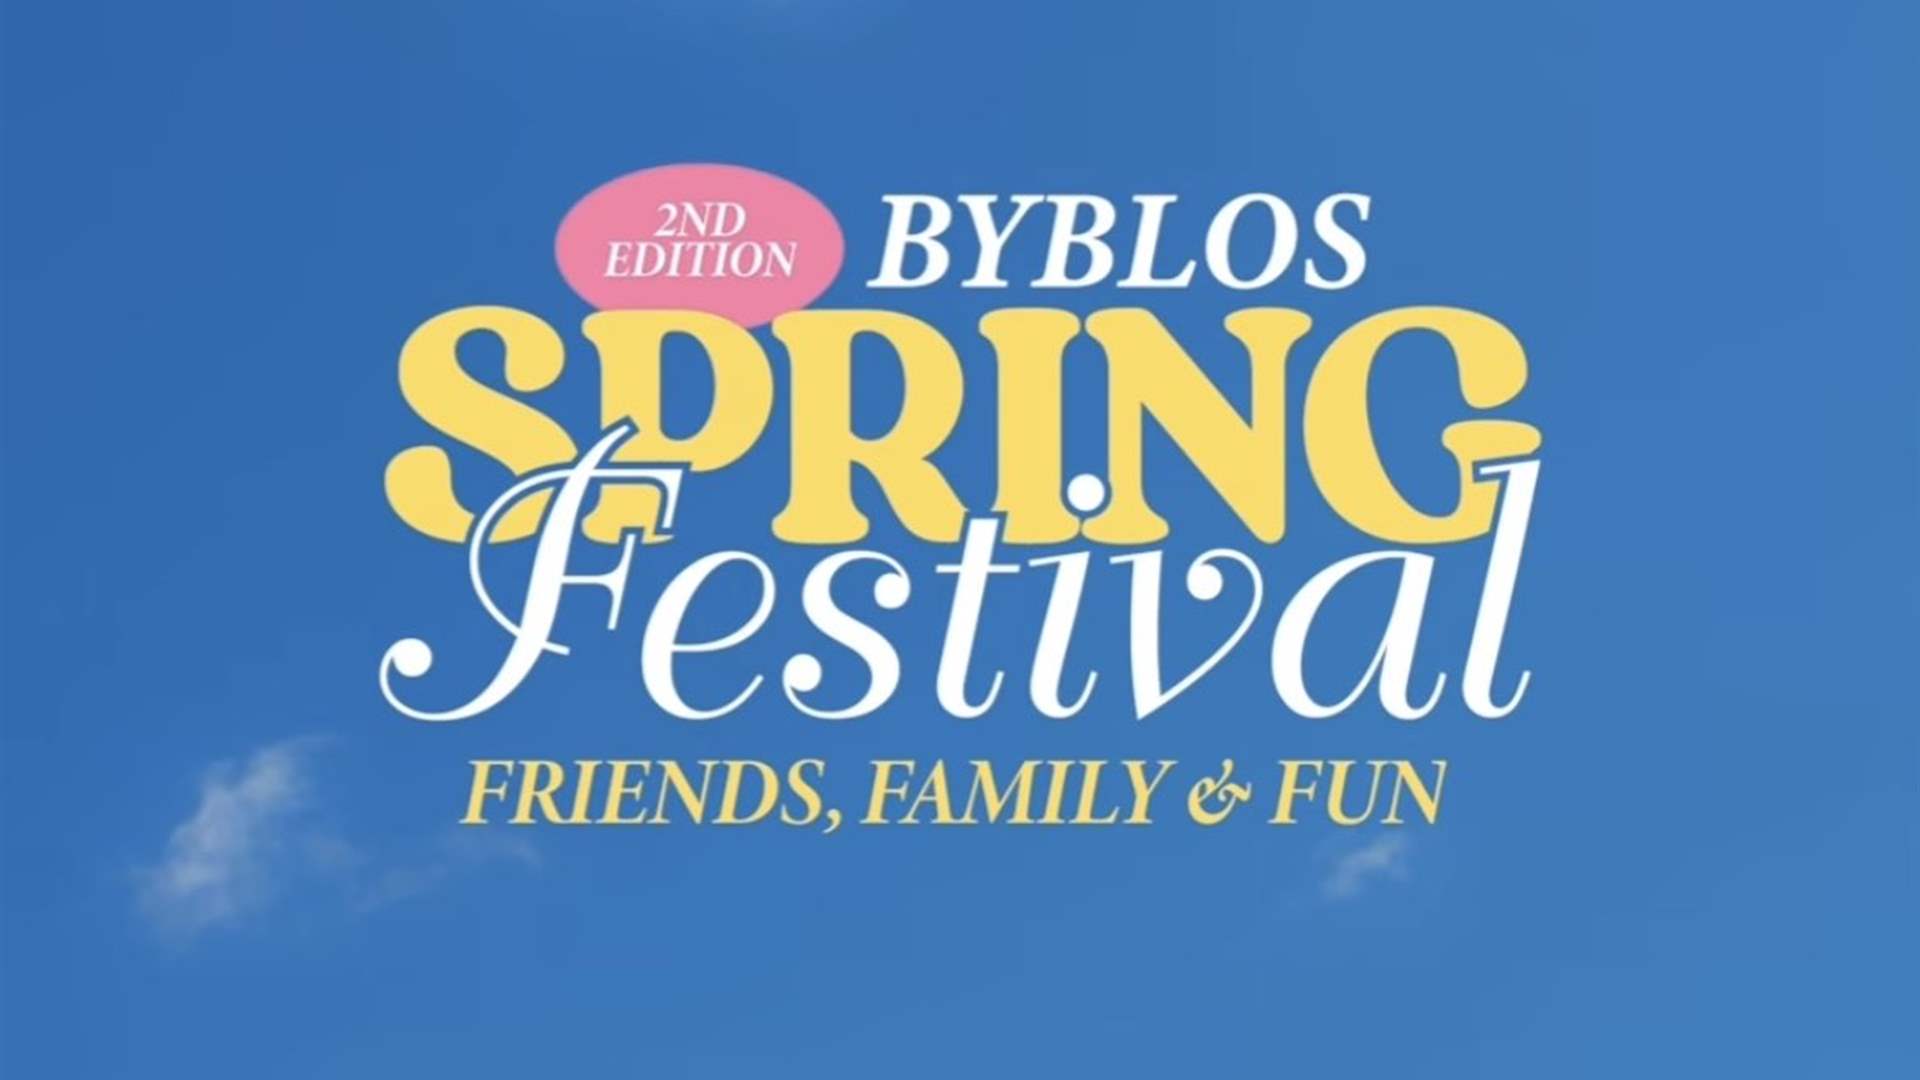 للصغار والكبار... استمتعوا بمعرض &quot;Byblos Spring Festival&quot; في جبيل: ماذا يتضمن؟! (فيديو)